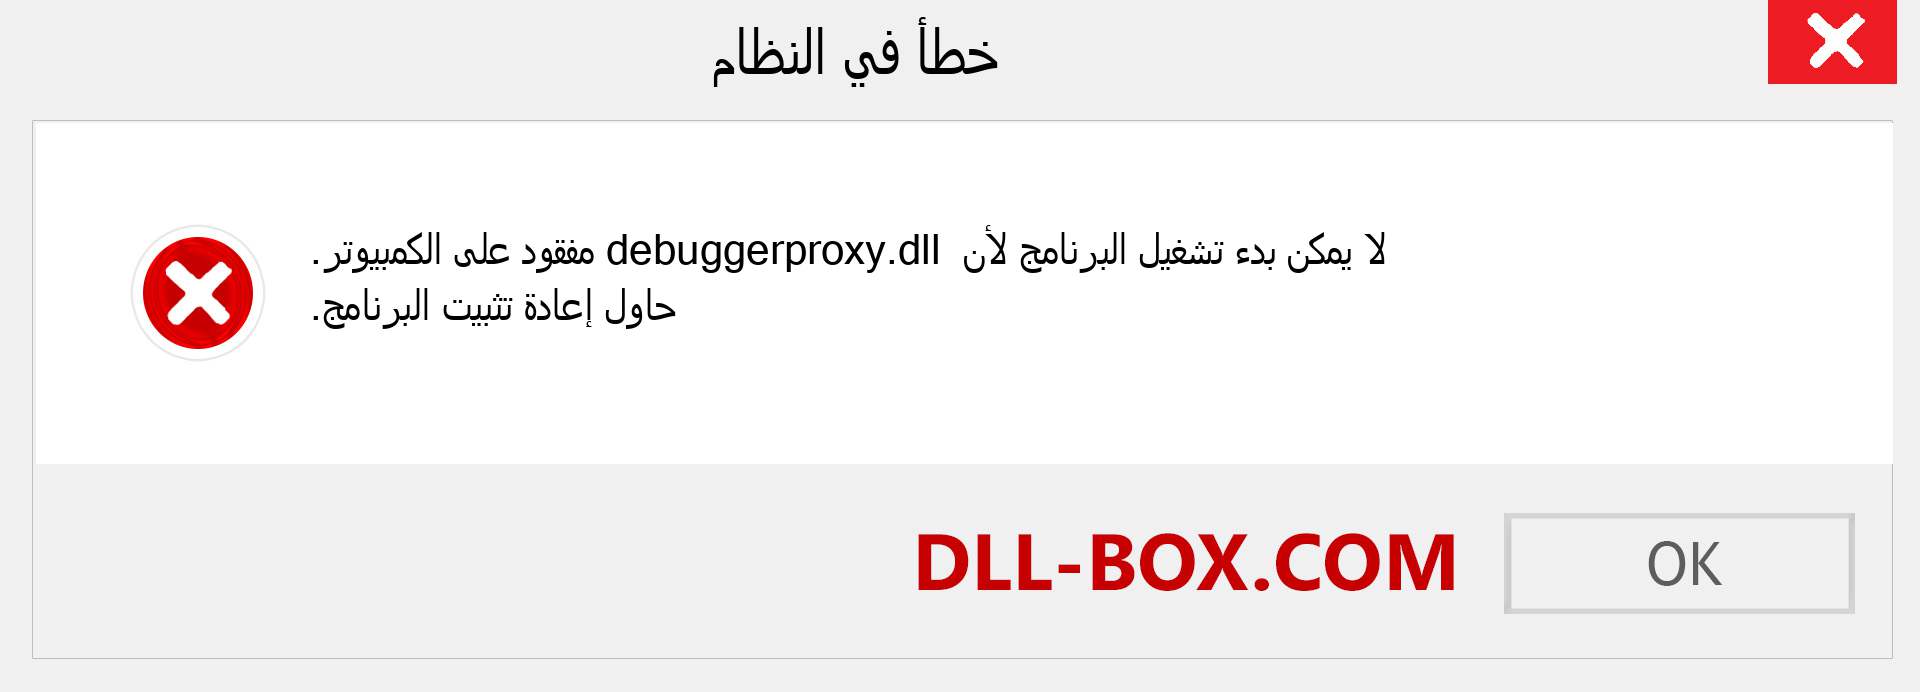 ملف debuggerproxy.dll مفقود ؟. التنزيل لنظام التشغيل Windows 7 و 8 و 10 - إصلاح خطأ debuggerproxy dll المفقود على Windows والصور والصور